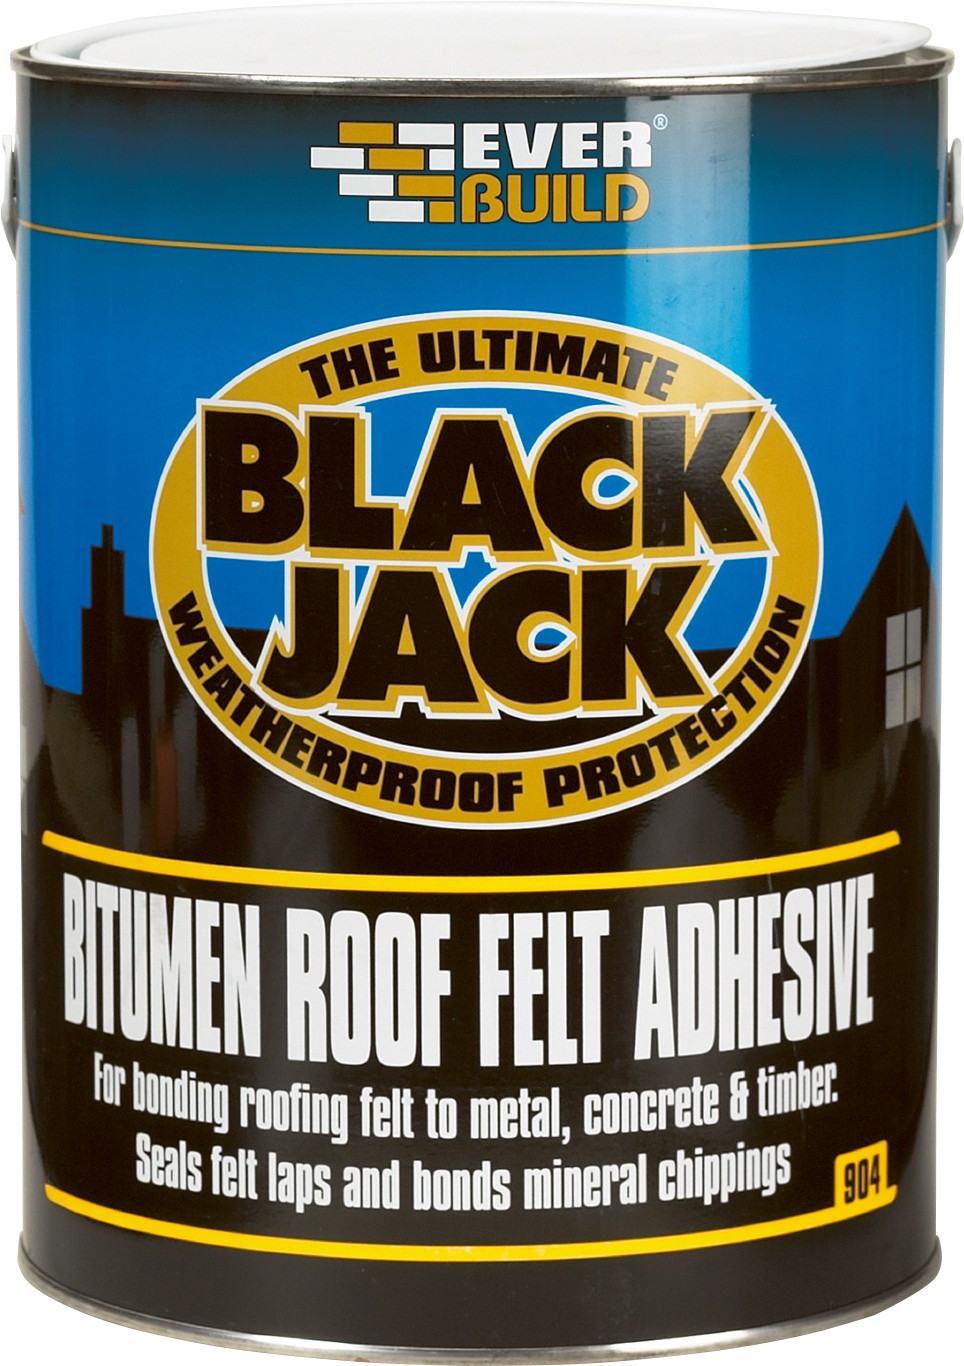 SikaEverbuild Black Jack 904 Roof Felt Adhesive 2.5L Black []